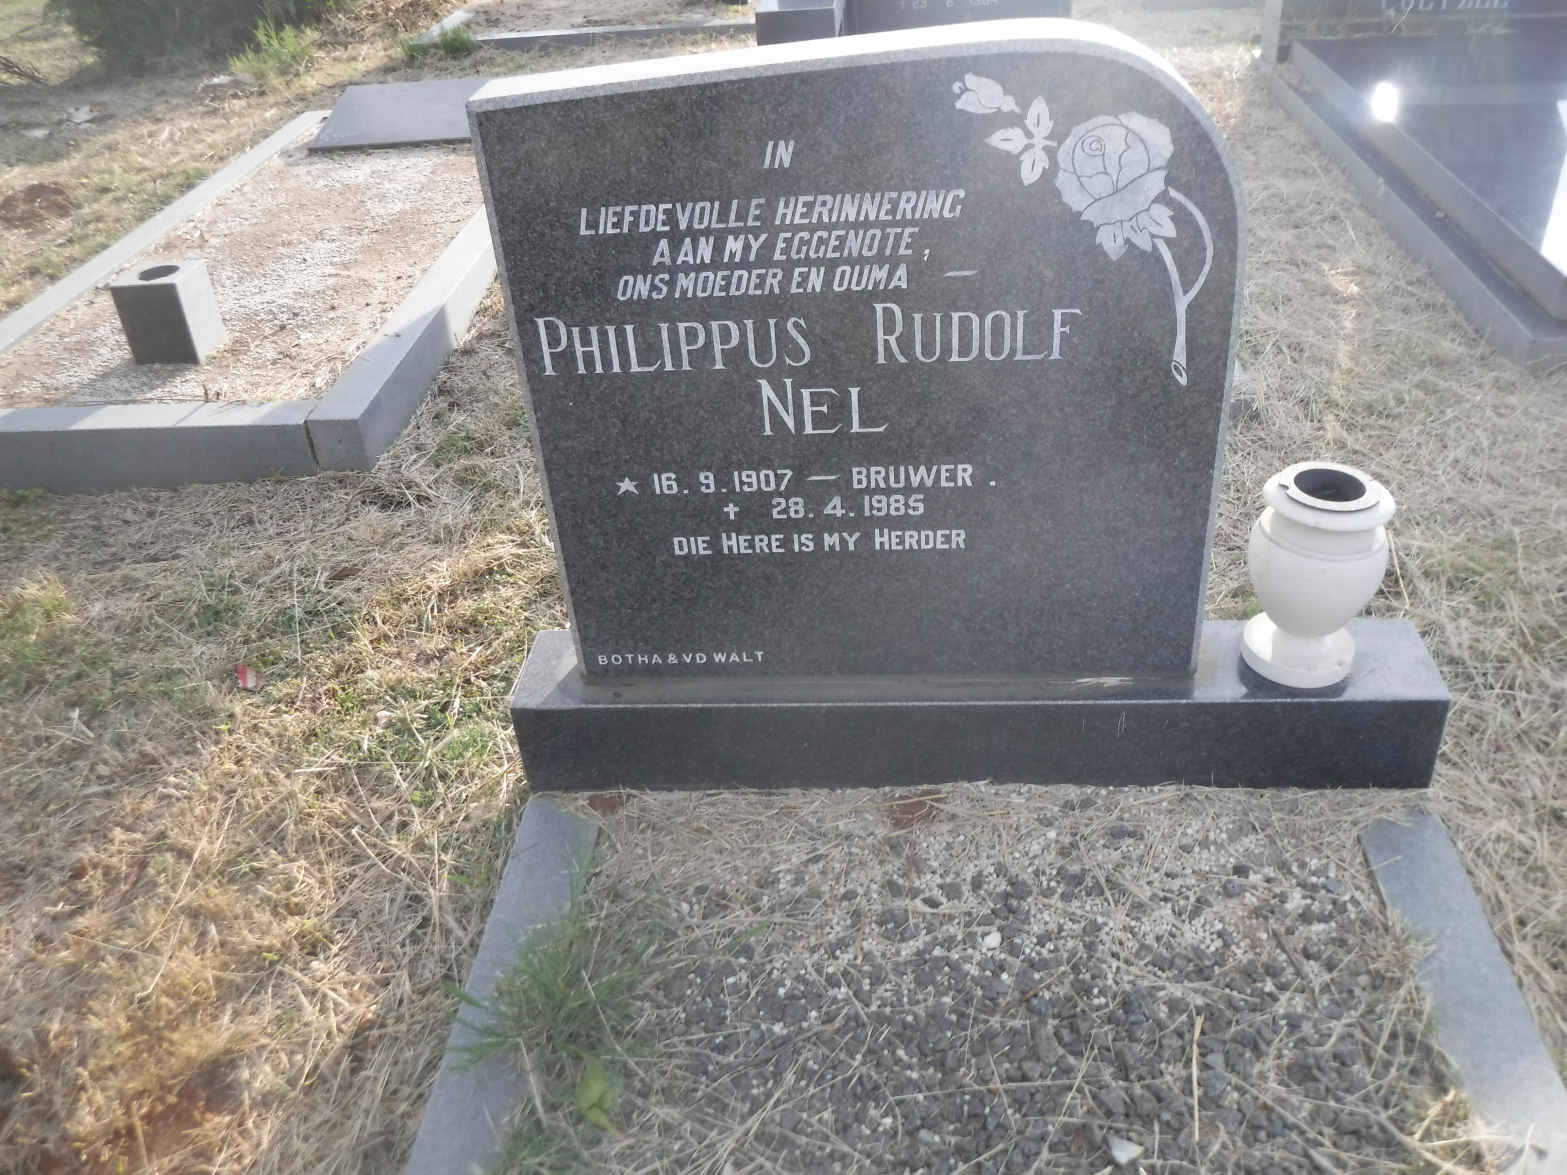 NEL Philippus Rudolf nee BRUWER 1907-1985